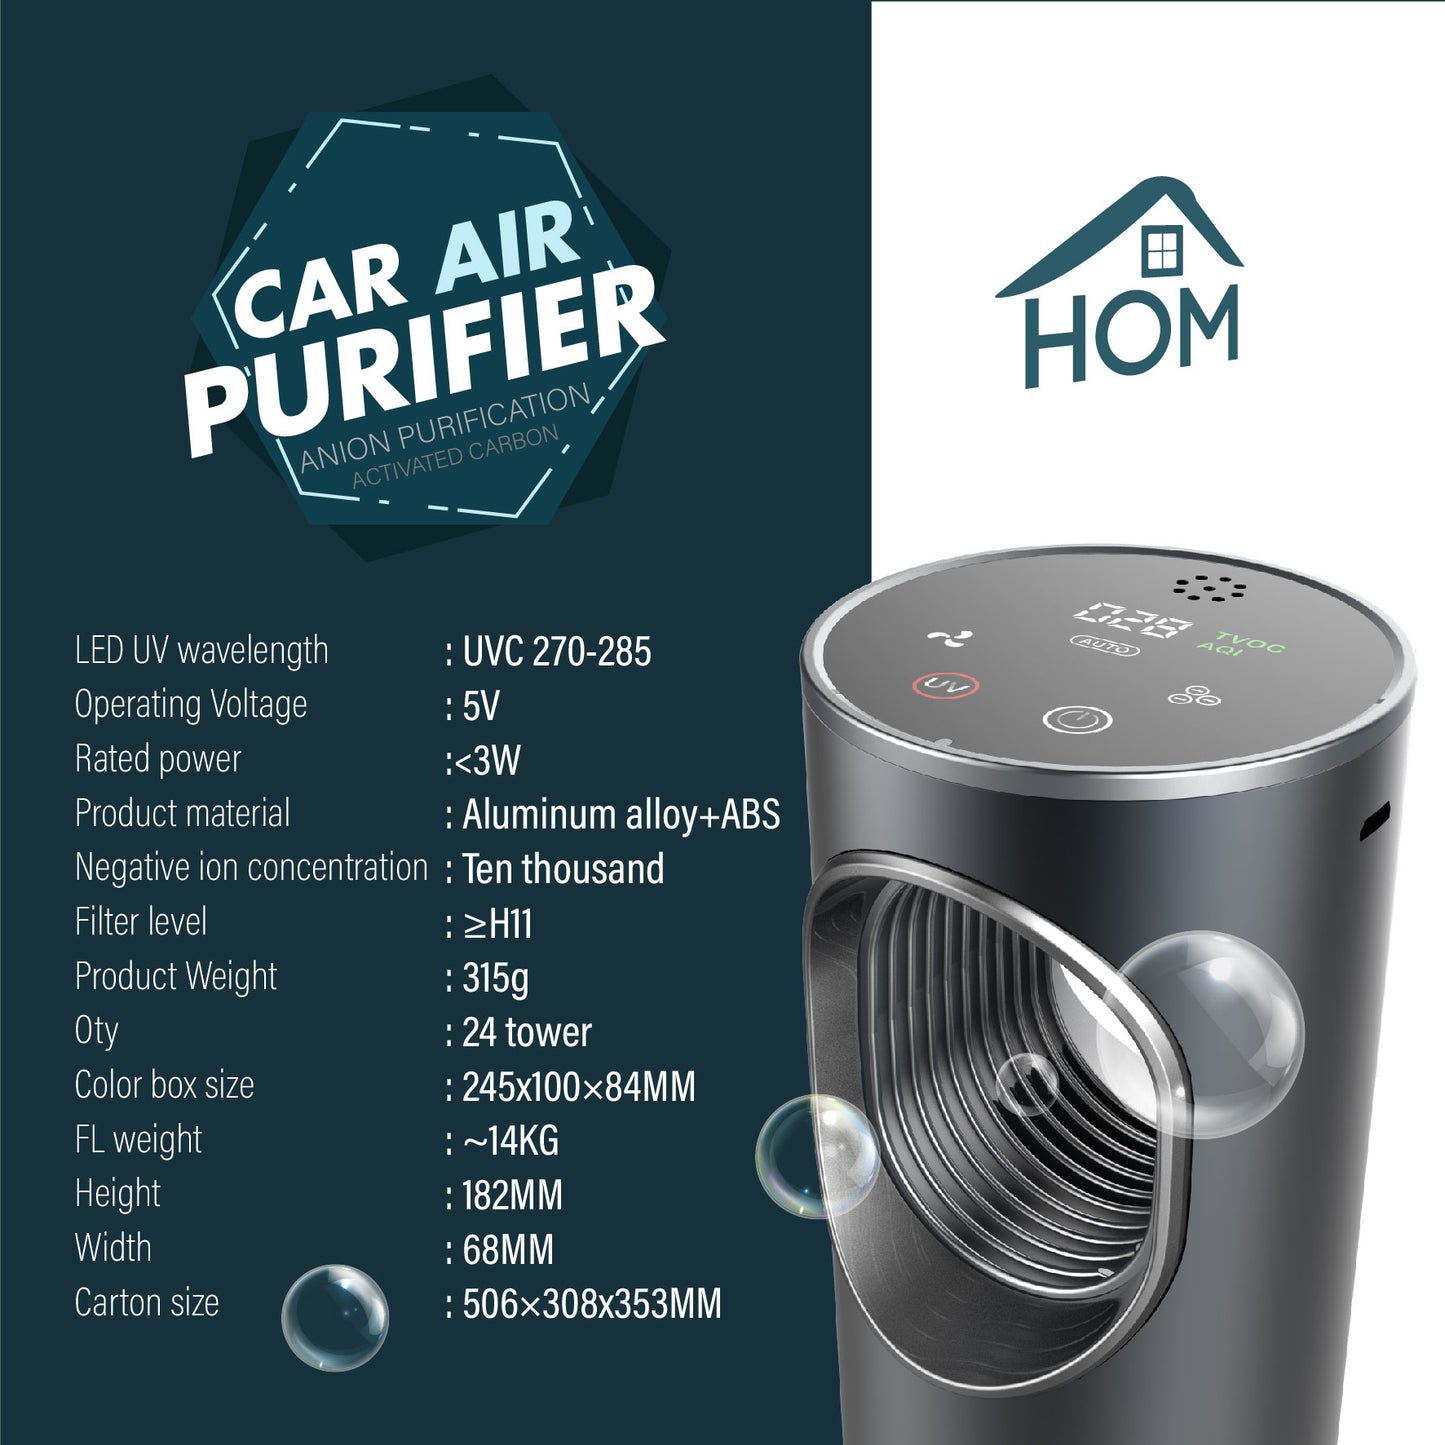 HOM Car Air Purifier